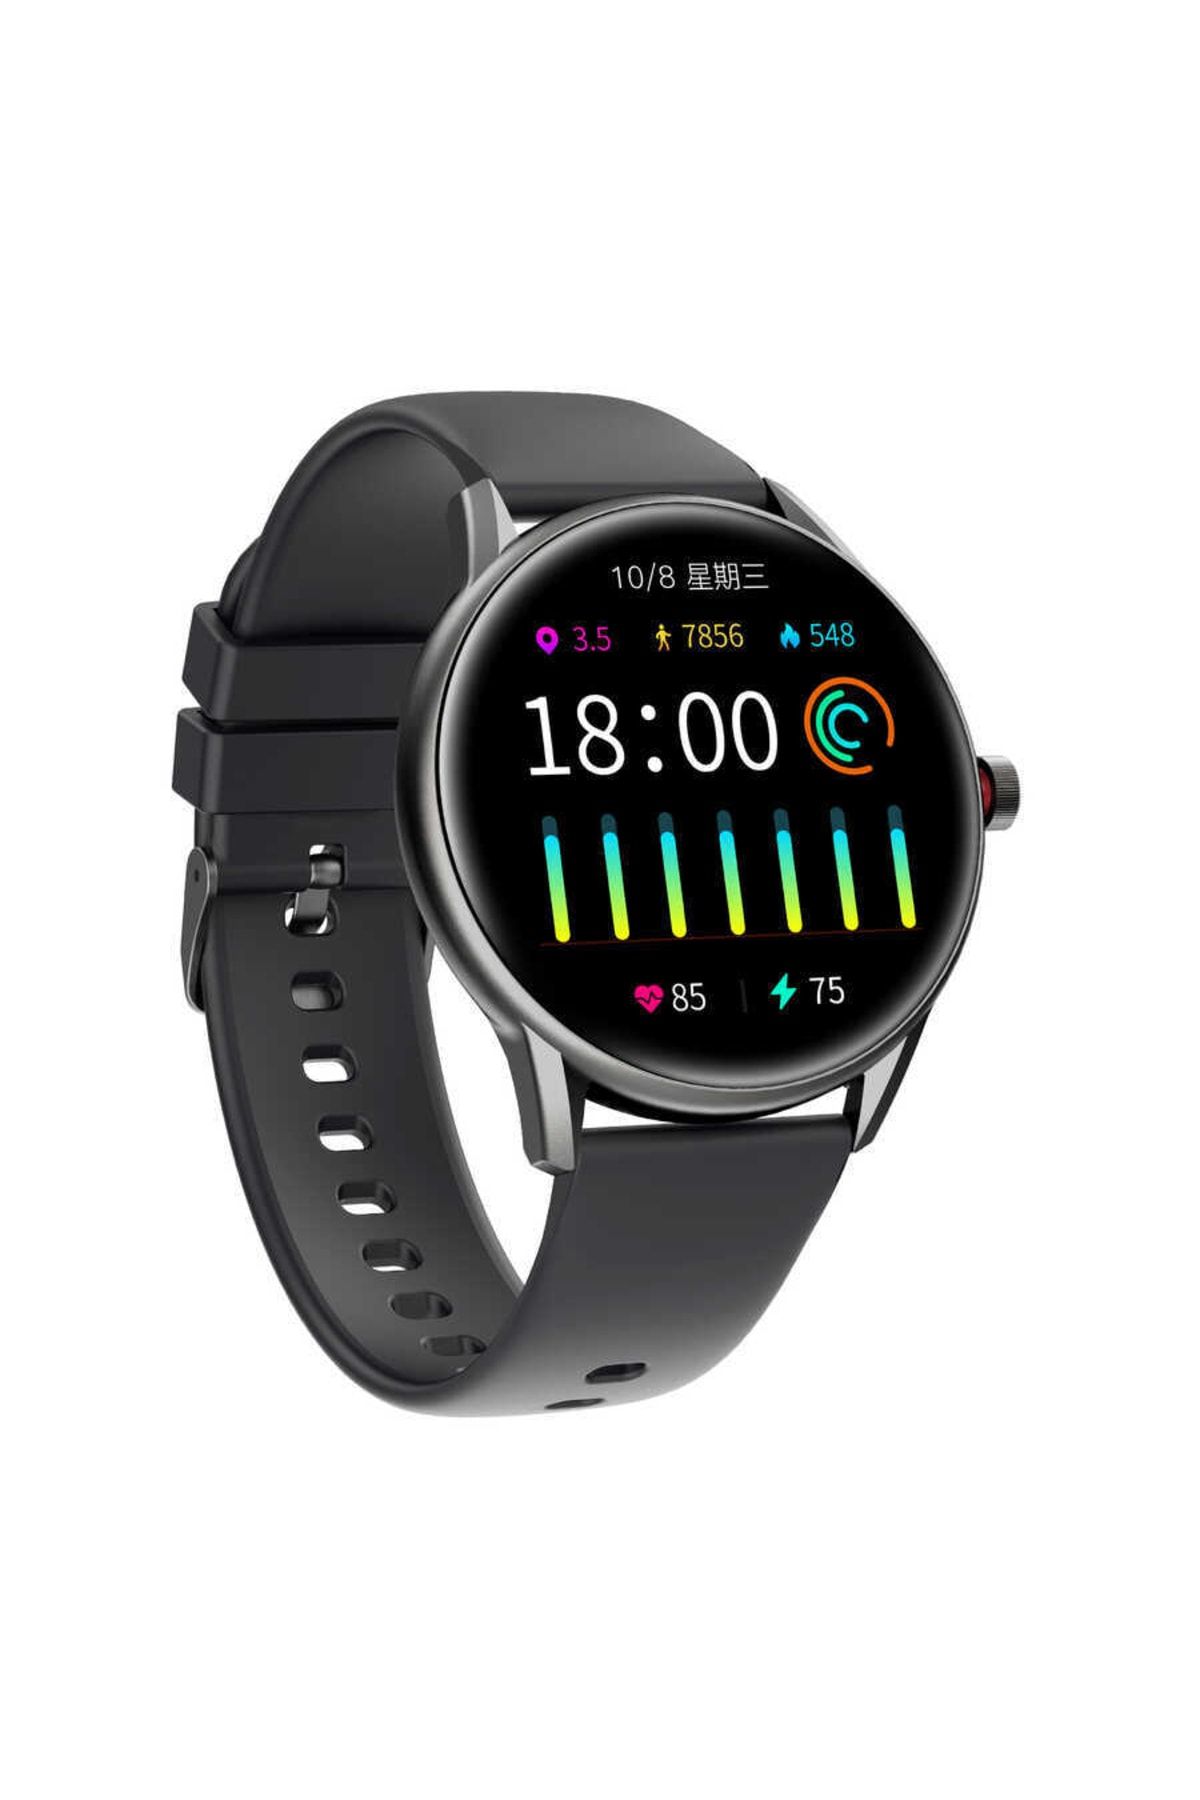 WIWU Sw04 Akıllı Saat 45 Mm 1.28" Ip68 Waterproof Tft Lcd Smart Watch Ios & Android Uyumlu